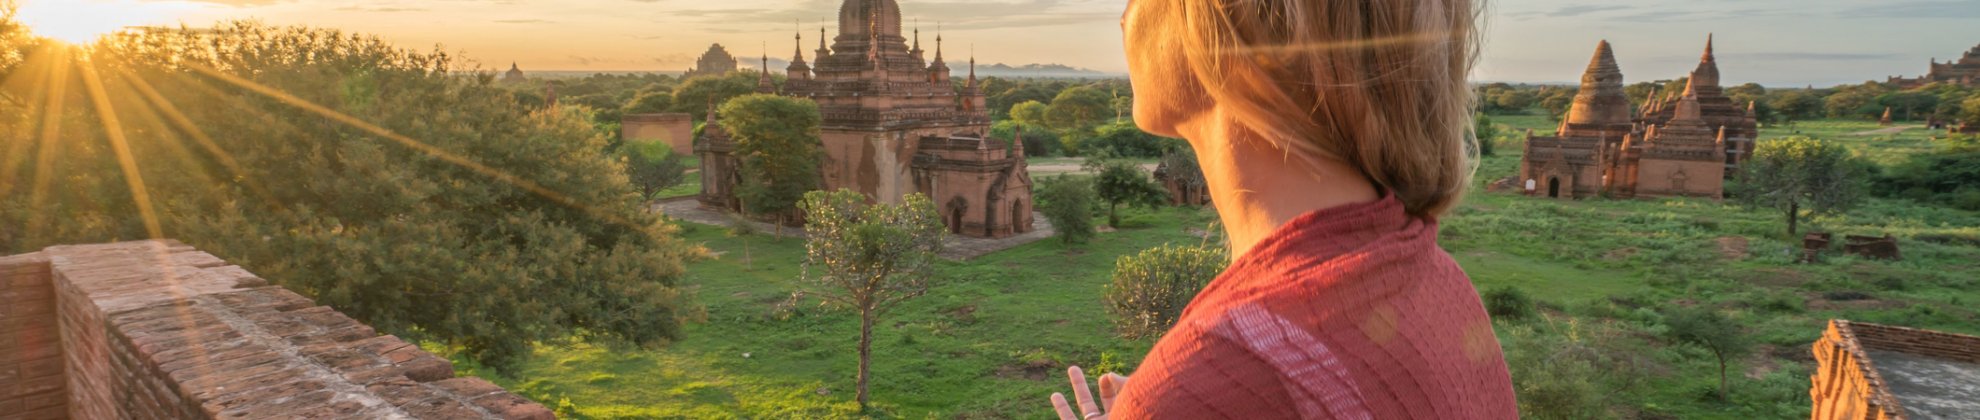 Myanmar Burma Mediatation Frau Tempelanlage Sonnenuntergang